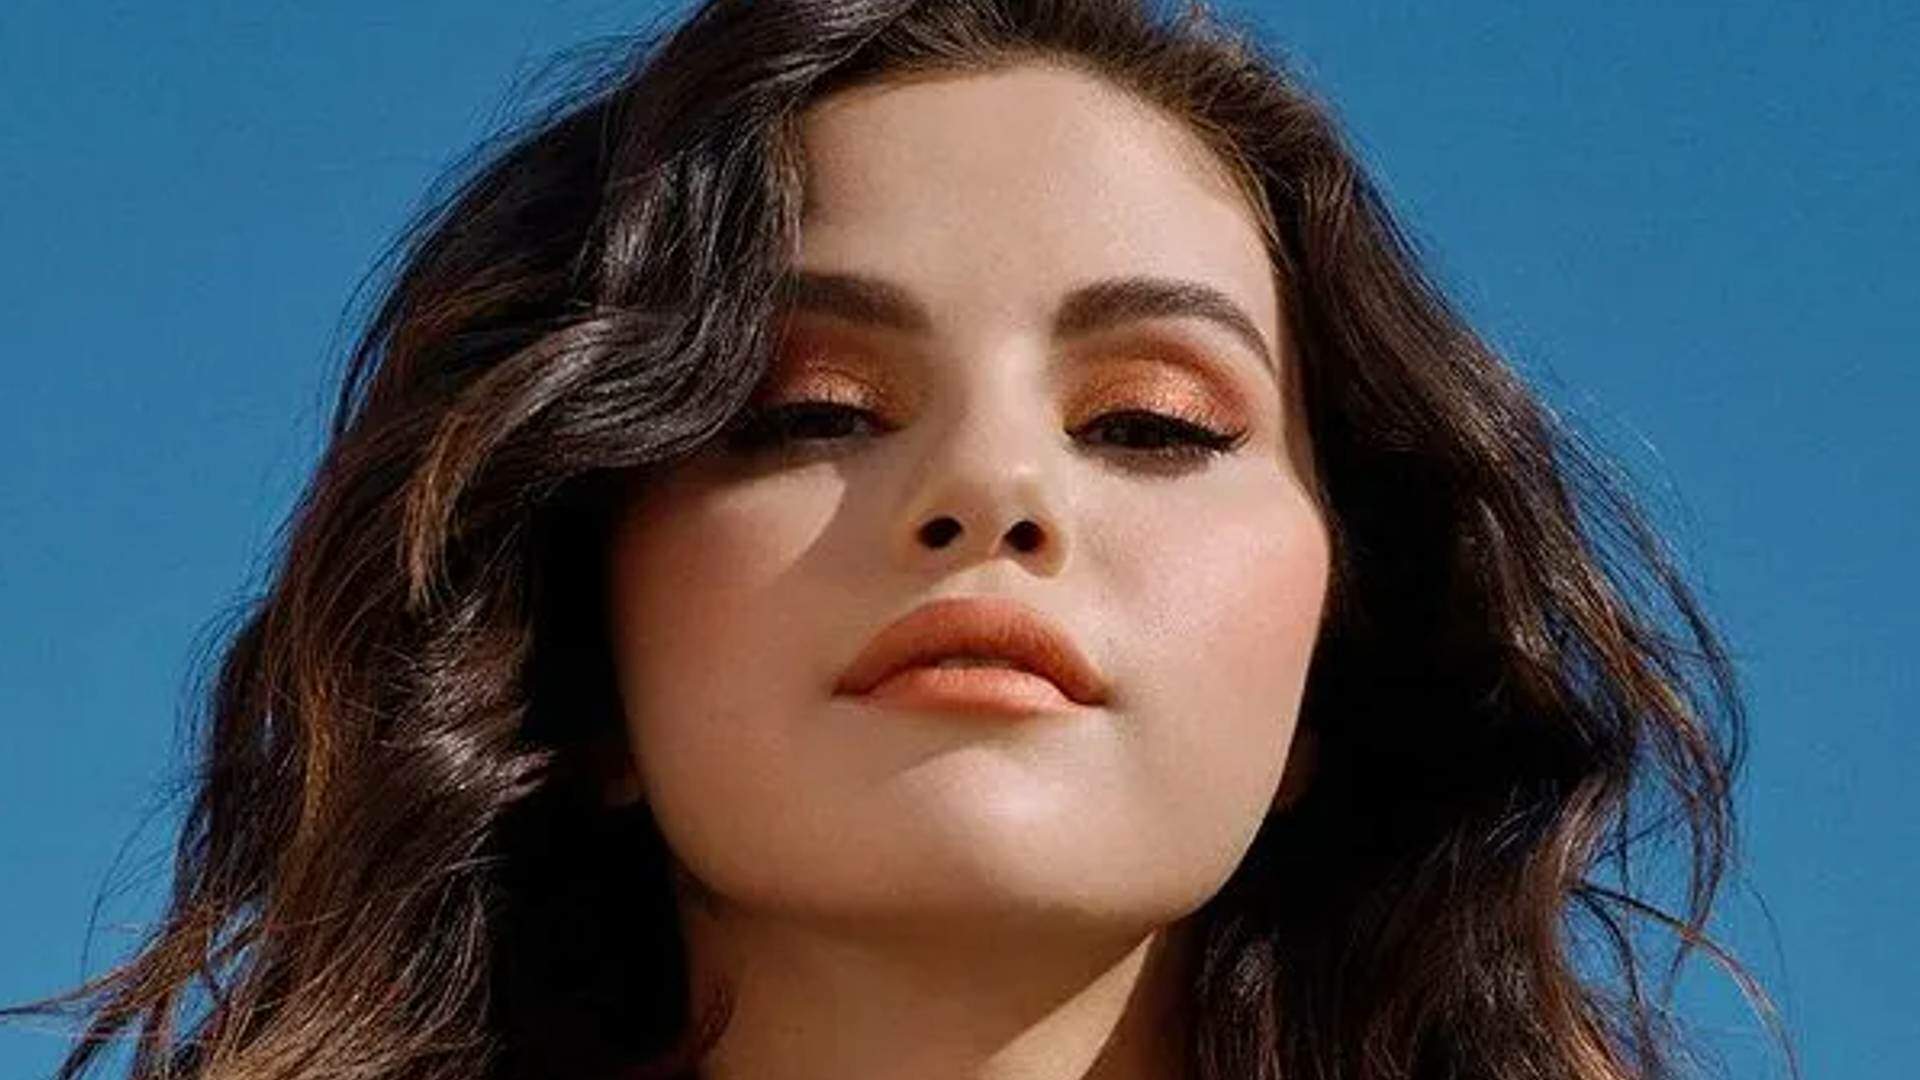 Novo casal? Selena Gomez está vivendo romance com grande nome da música eletrônica - Metropolitana FM